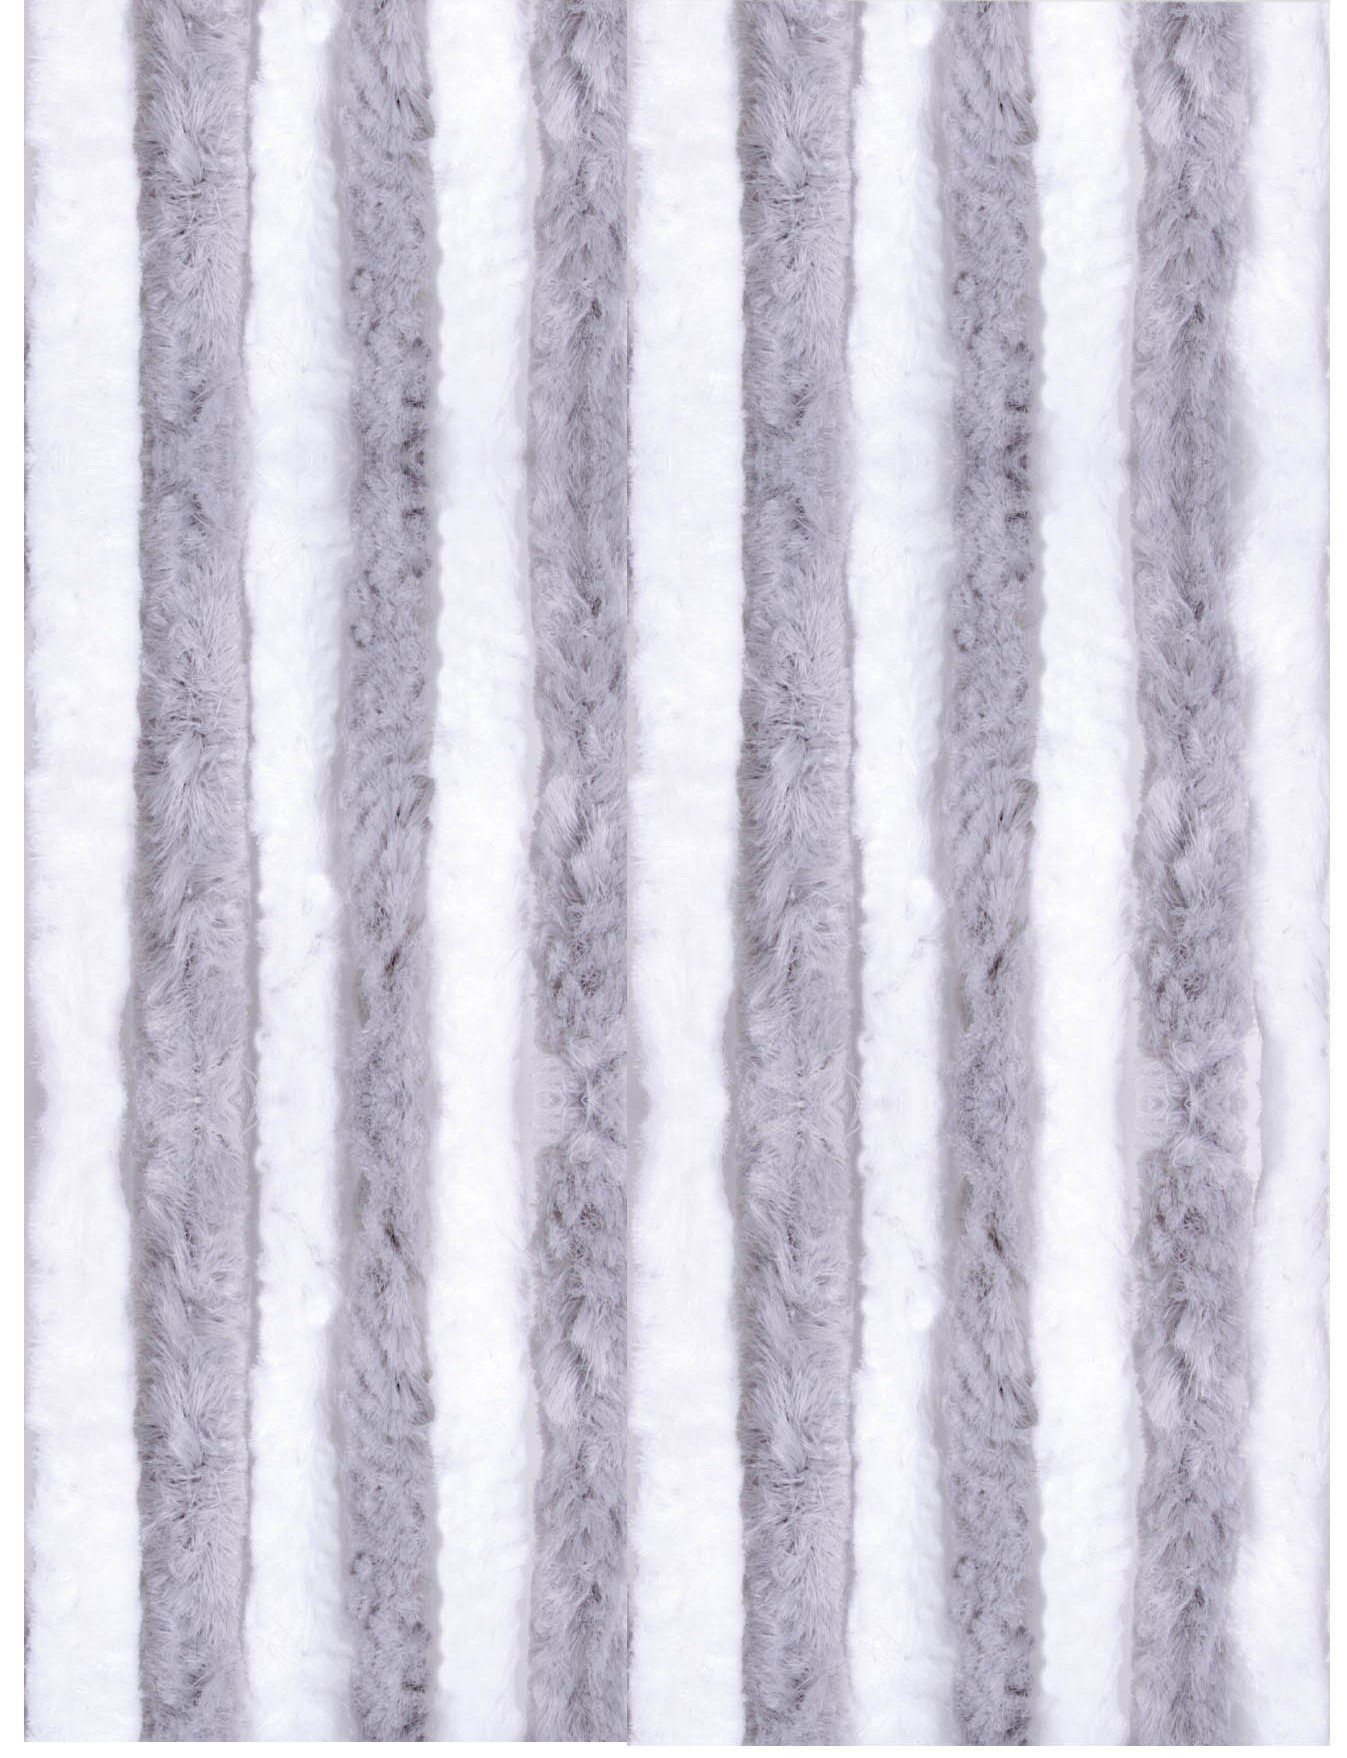 Türvorhang Flauschi, Arsvita, Ösen (1 St), blickdicht, Flauschvorhang in 80cm Breite, perfekter Insekten- und Sichtschutz, viele versch. Farben verfügbar Hellgrau - Weiß